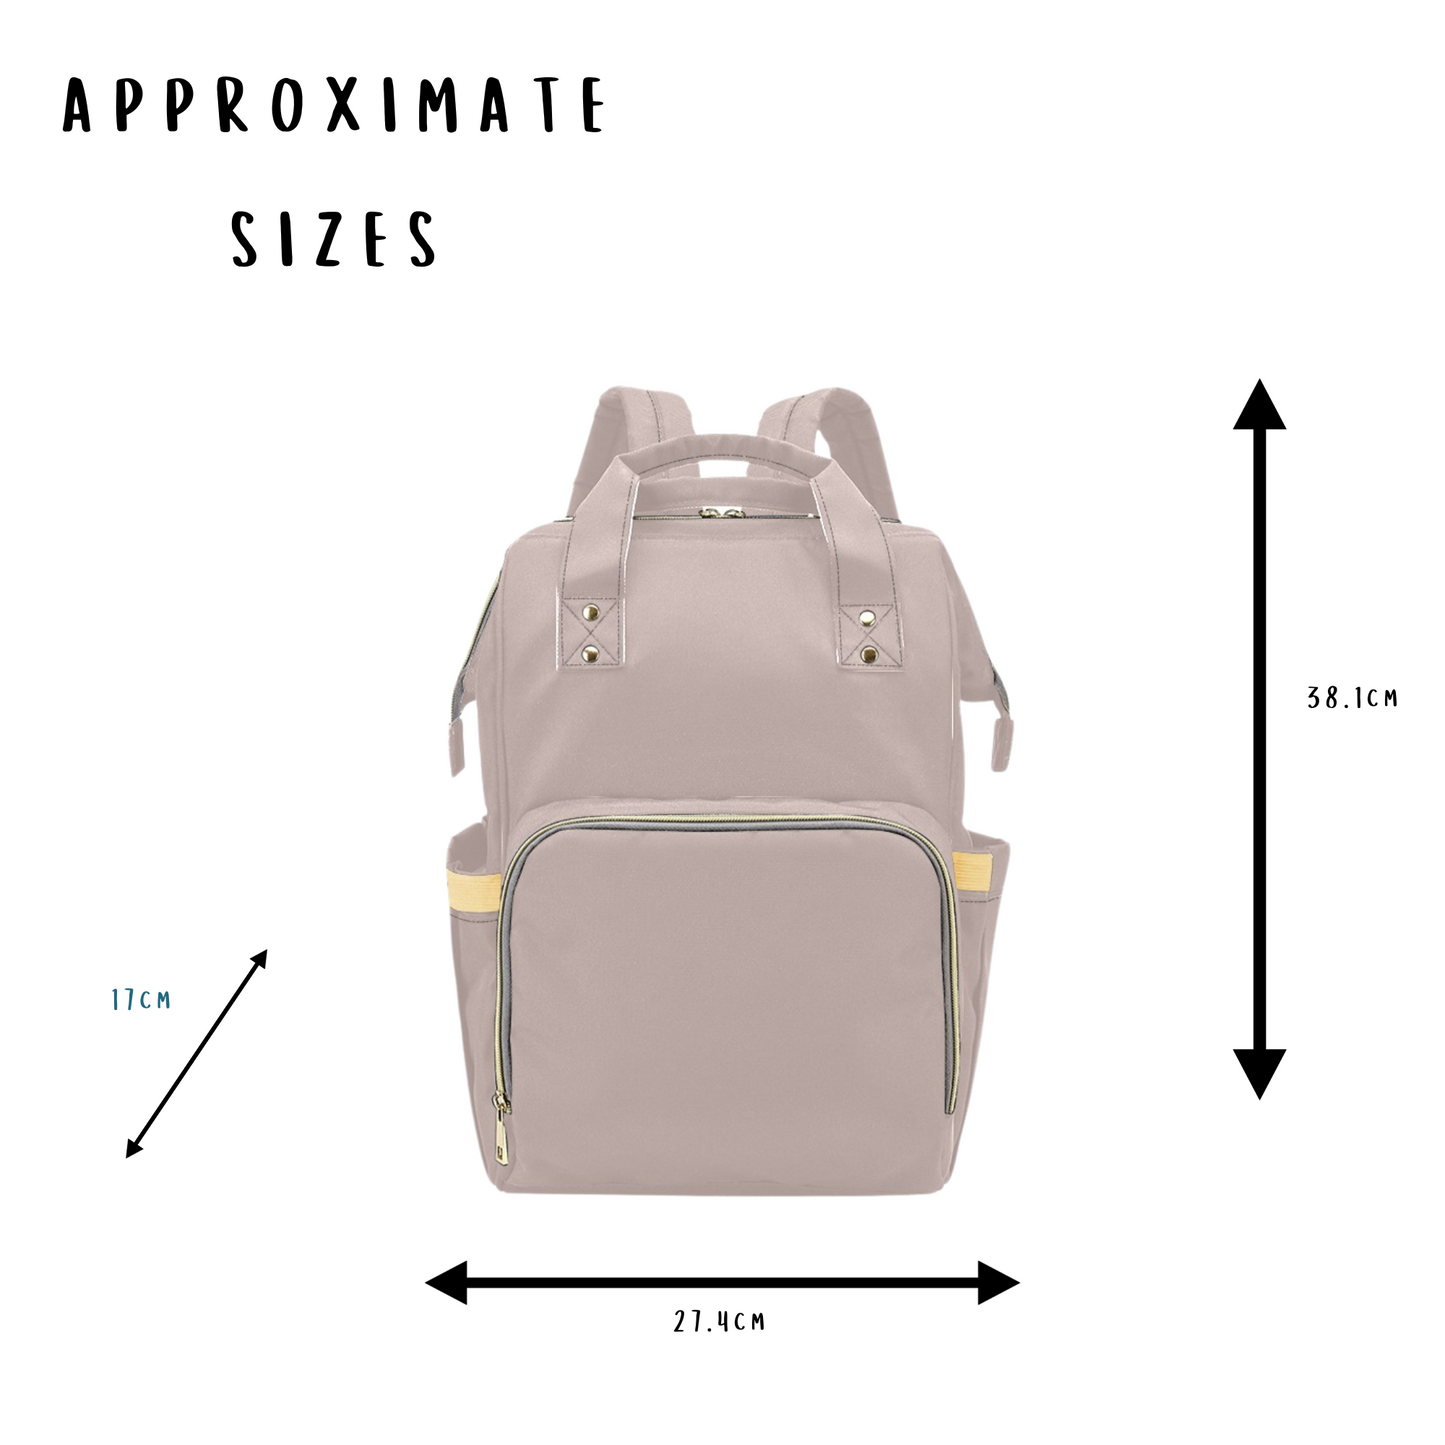 Wood Rose Baby Changing Bag  - Multi-Function Diaper Backpack/Diaper Bag